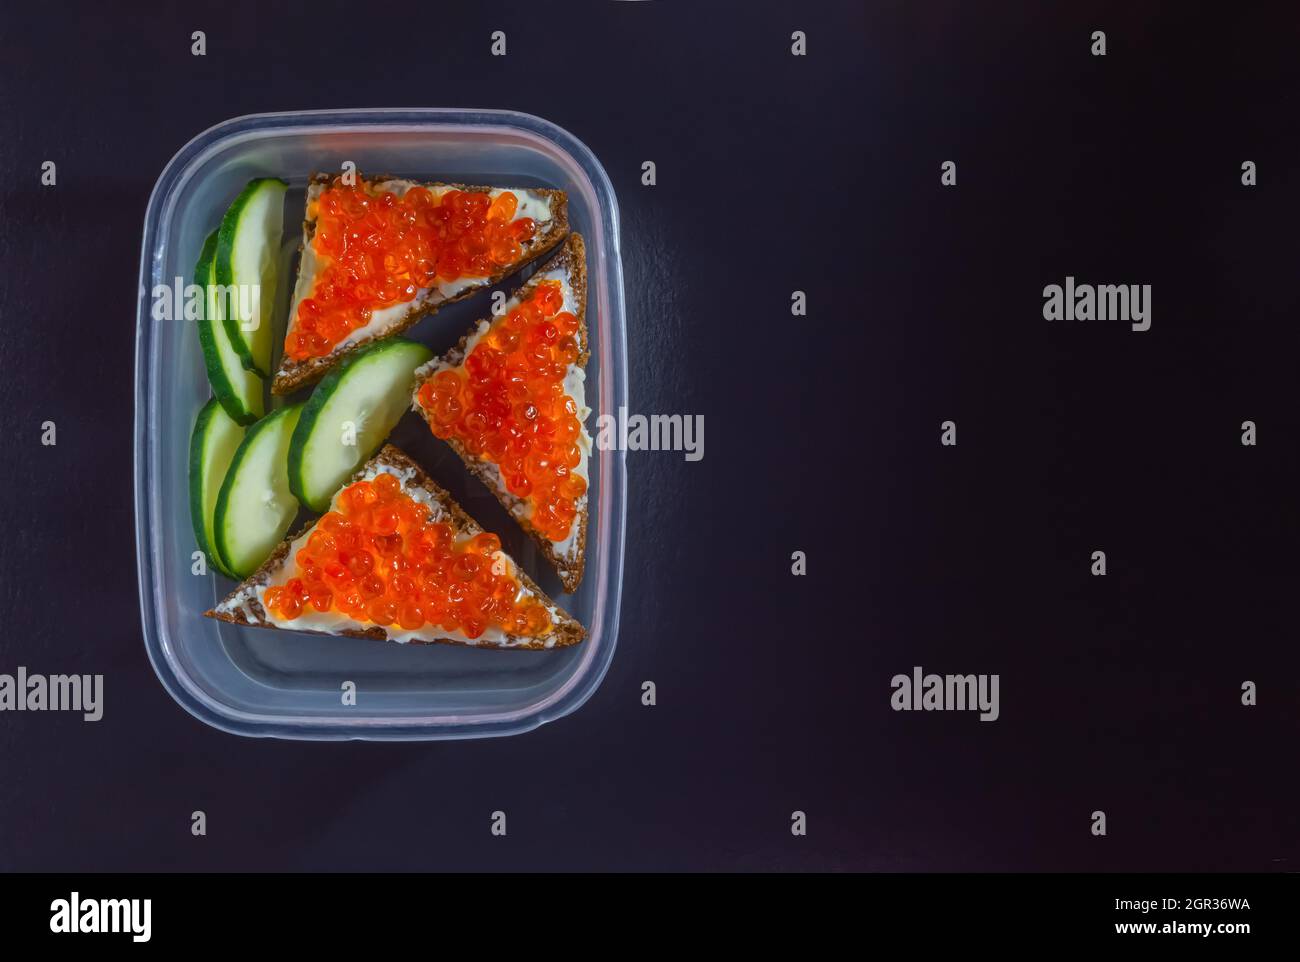 Neujahrsessen in einer transparenten Schachtel mit roten Kaviar-Sandwiches und frischen Gurken auf schwarzem Hintergrund. Hochwertige Fotos Stockfoto